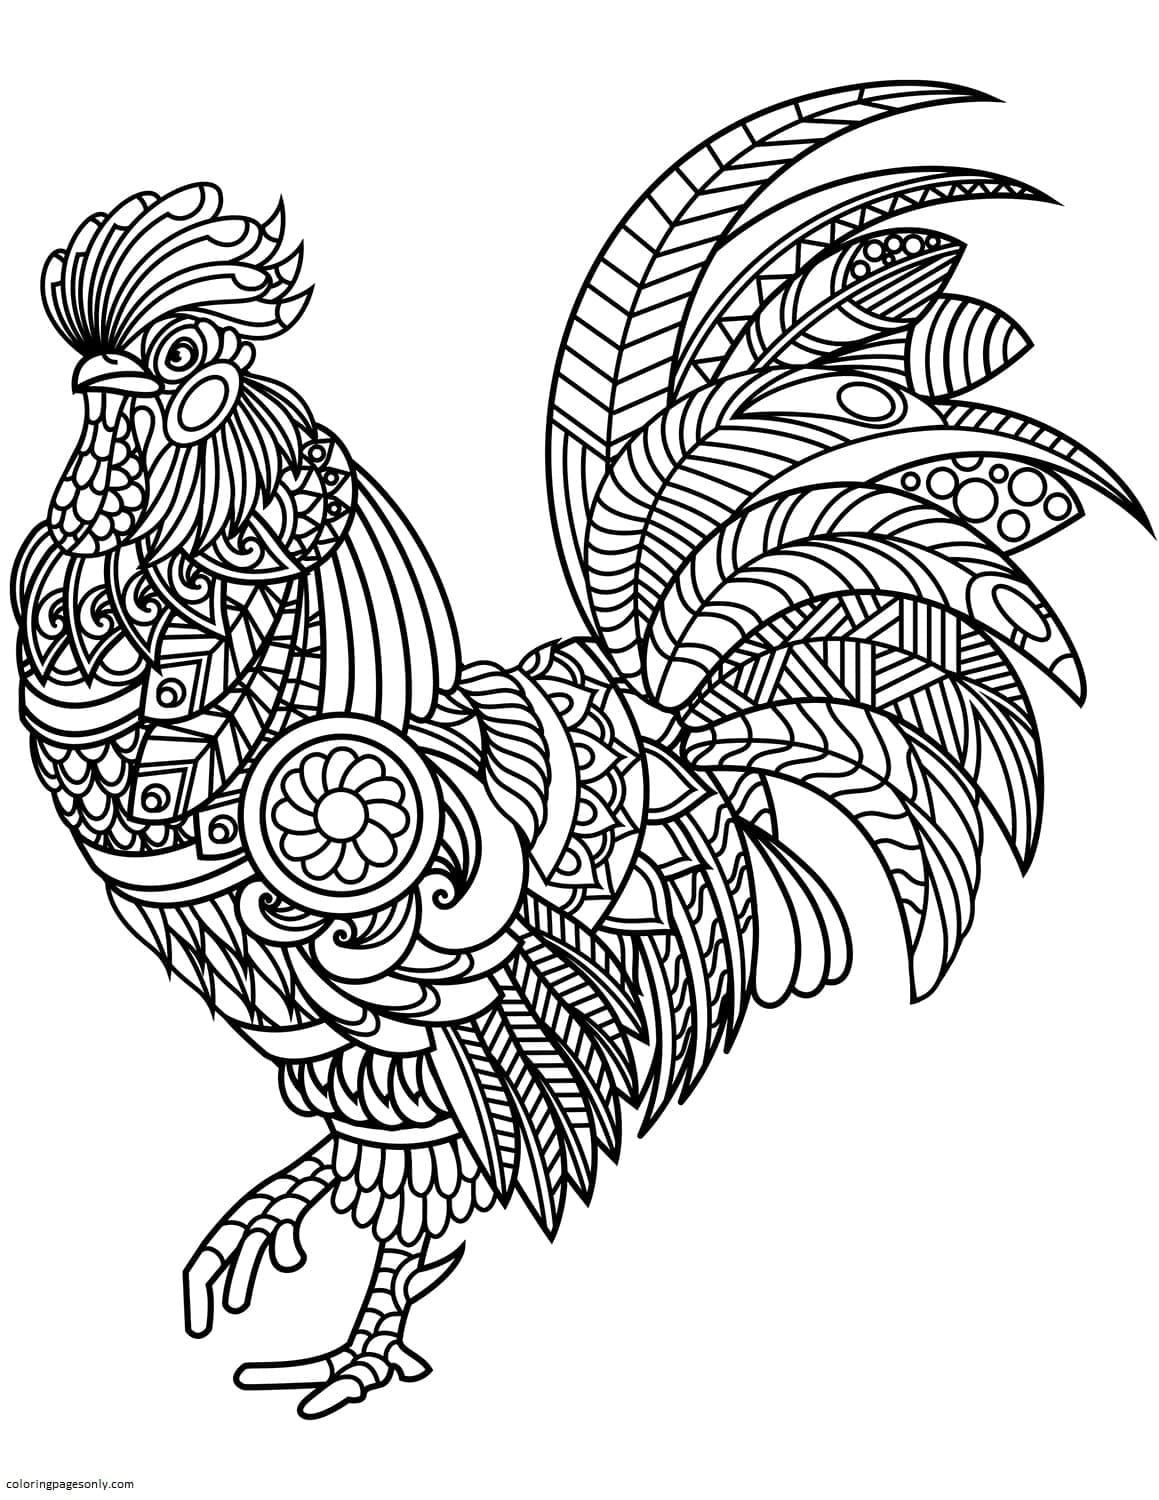 Disegni da colorare di gallo zentangle